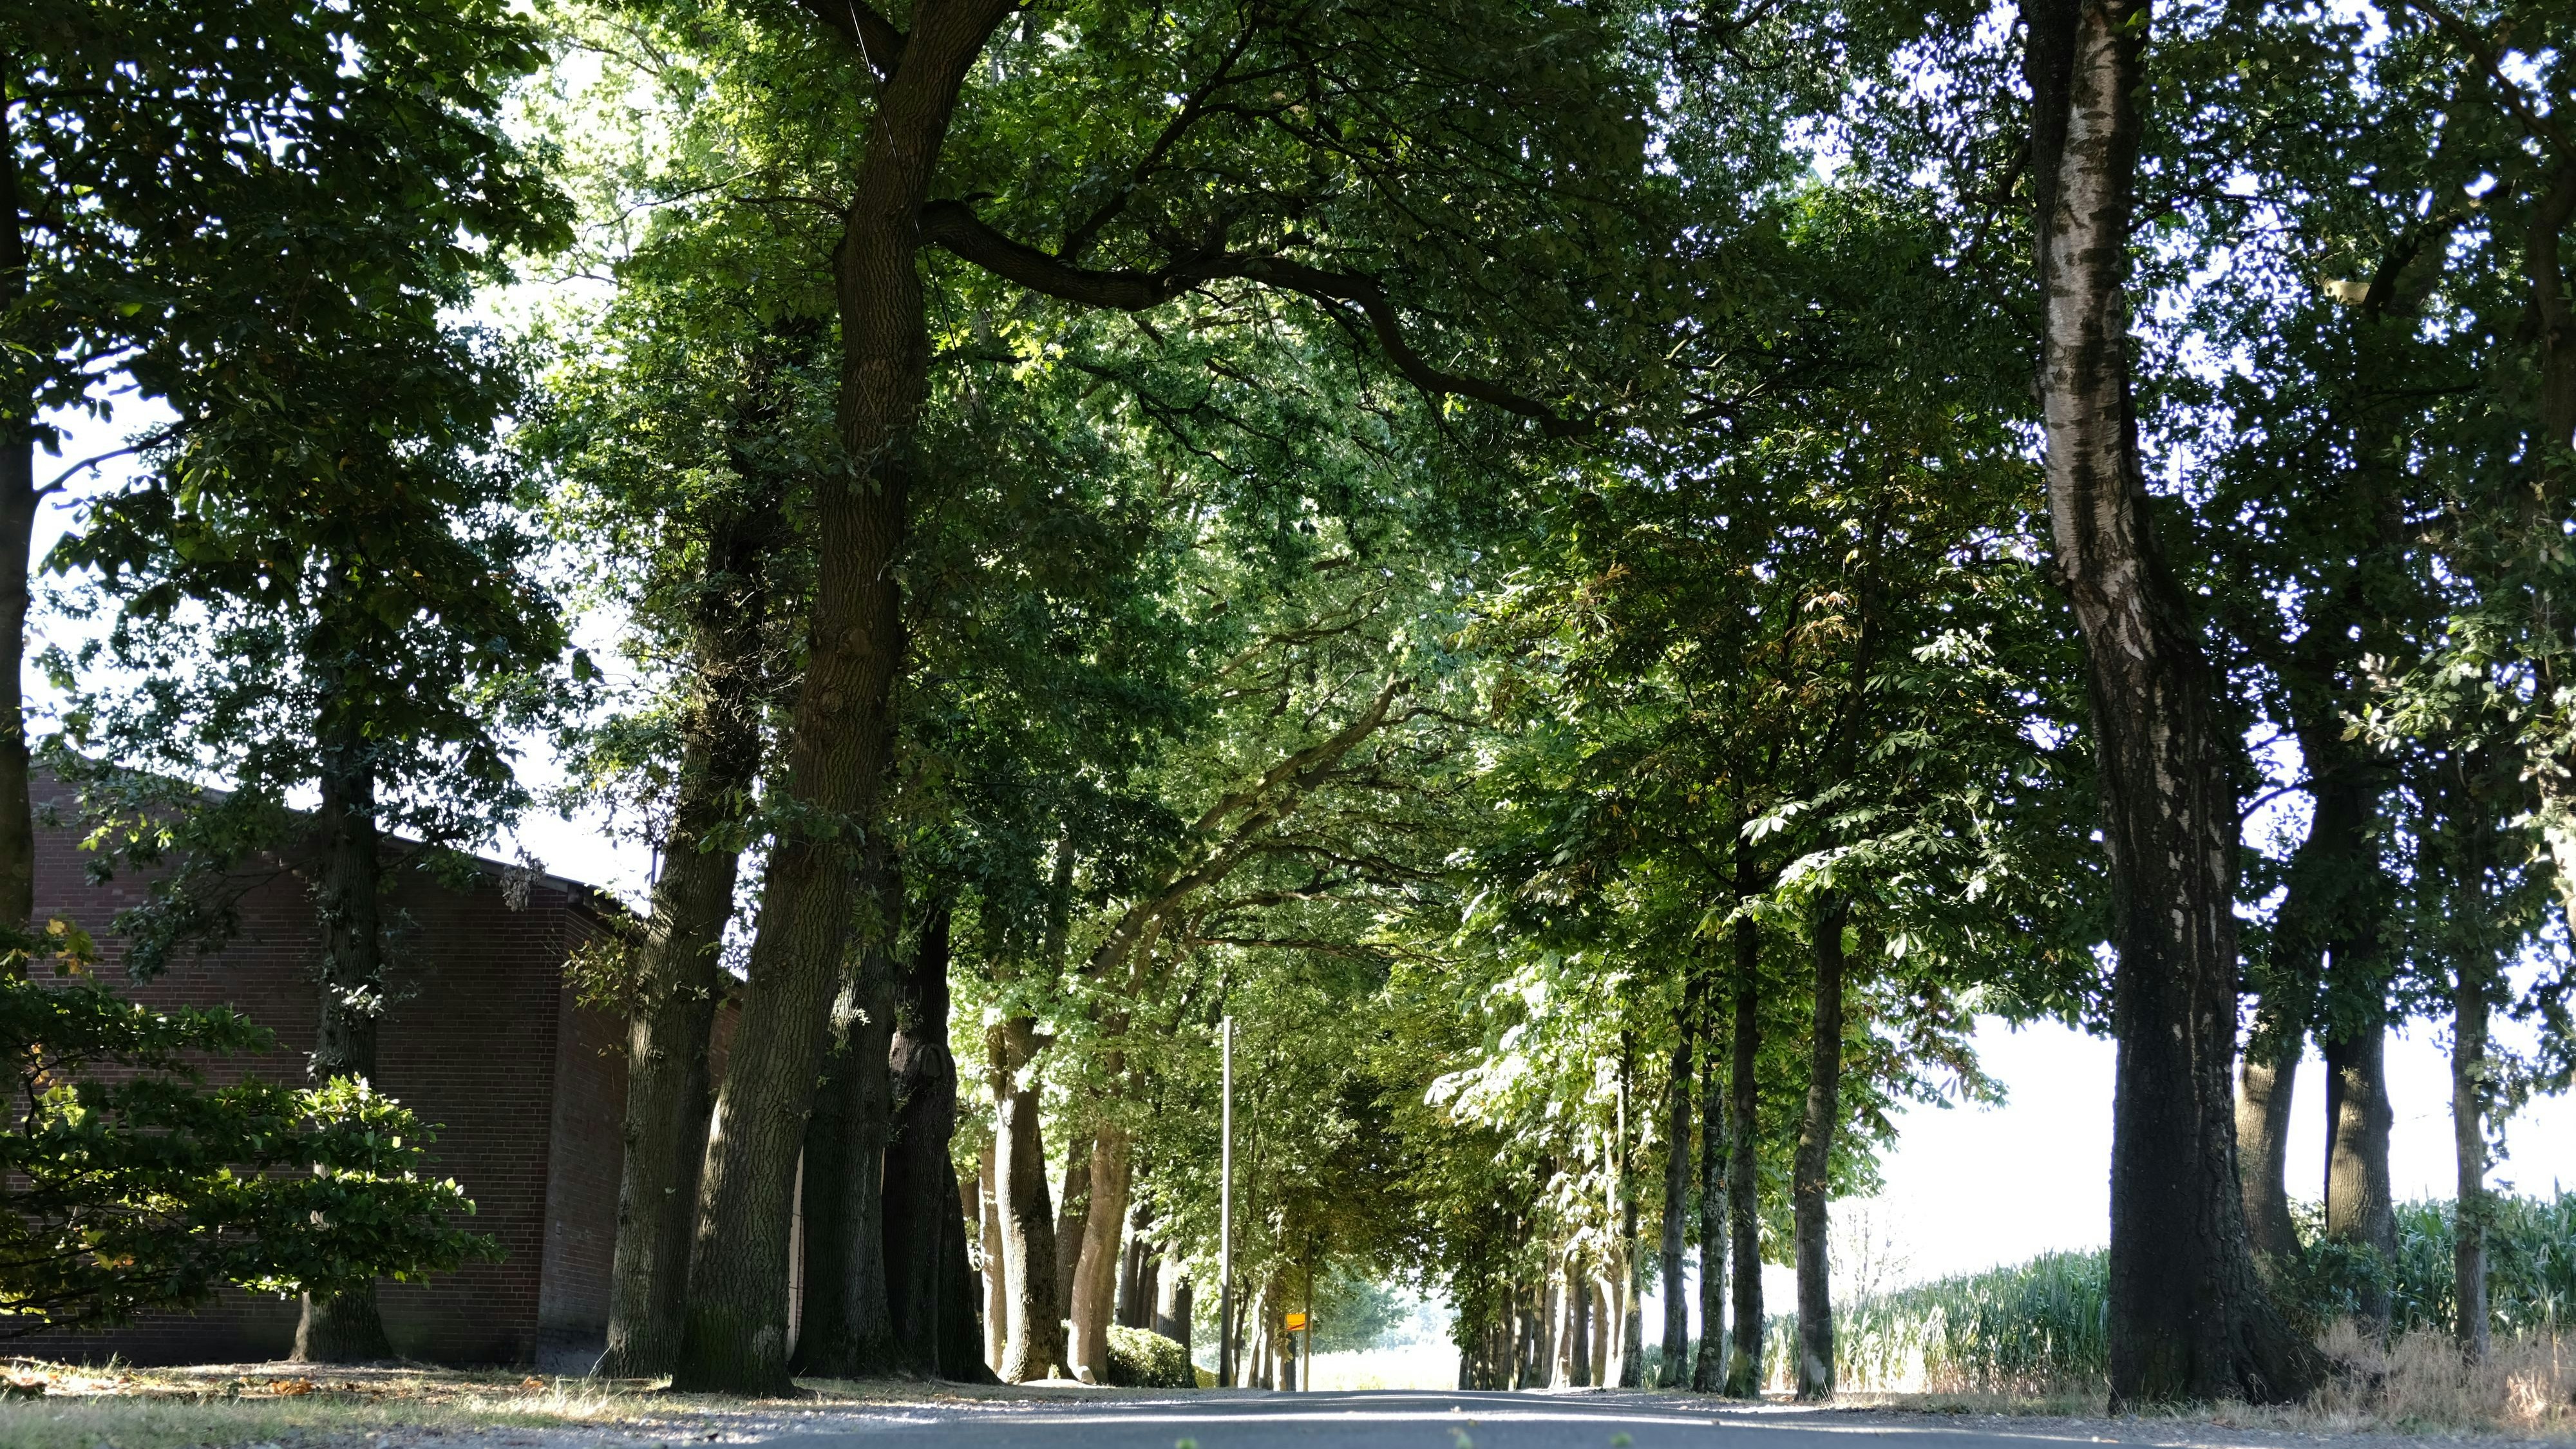 Werden wohl gefällt: 49 Bäume am Brookweg in Cloppenburg. Archivfoto: Niemeyer